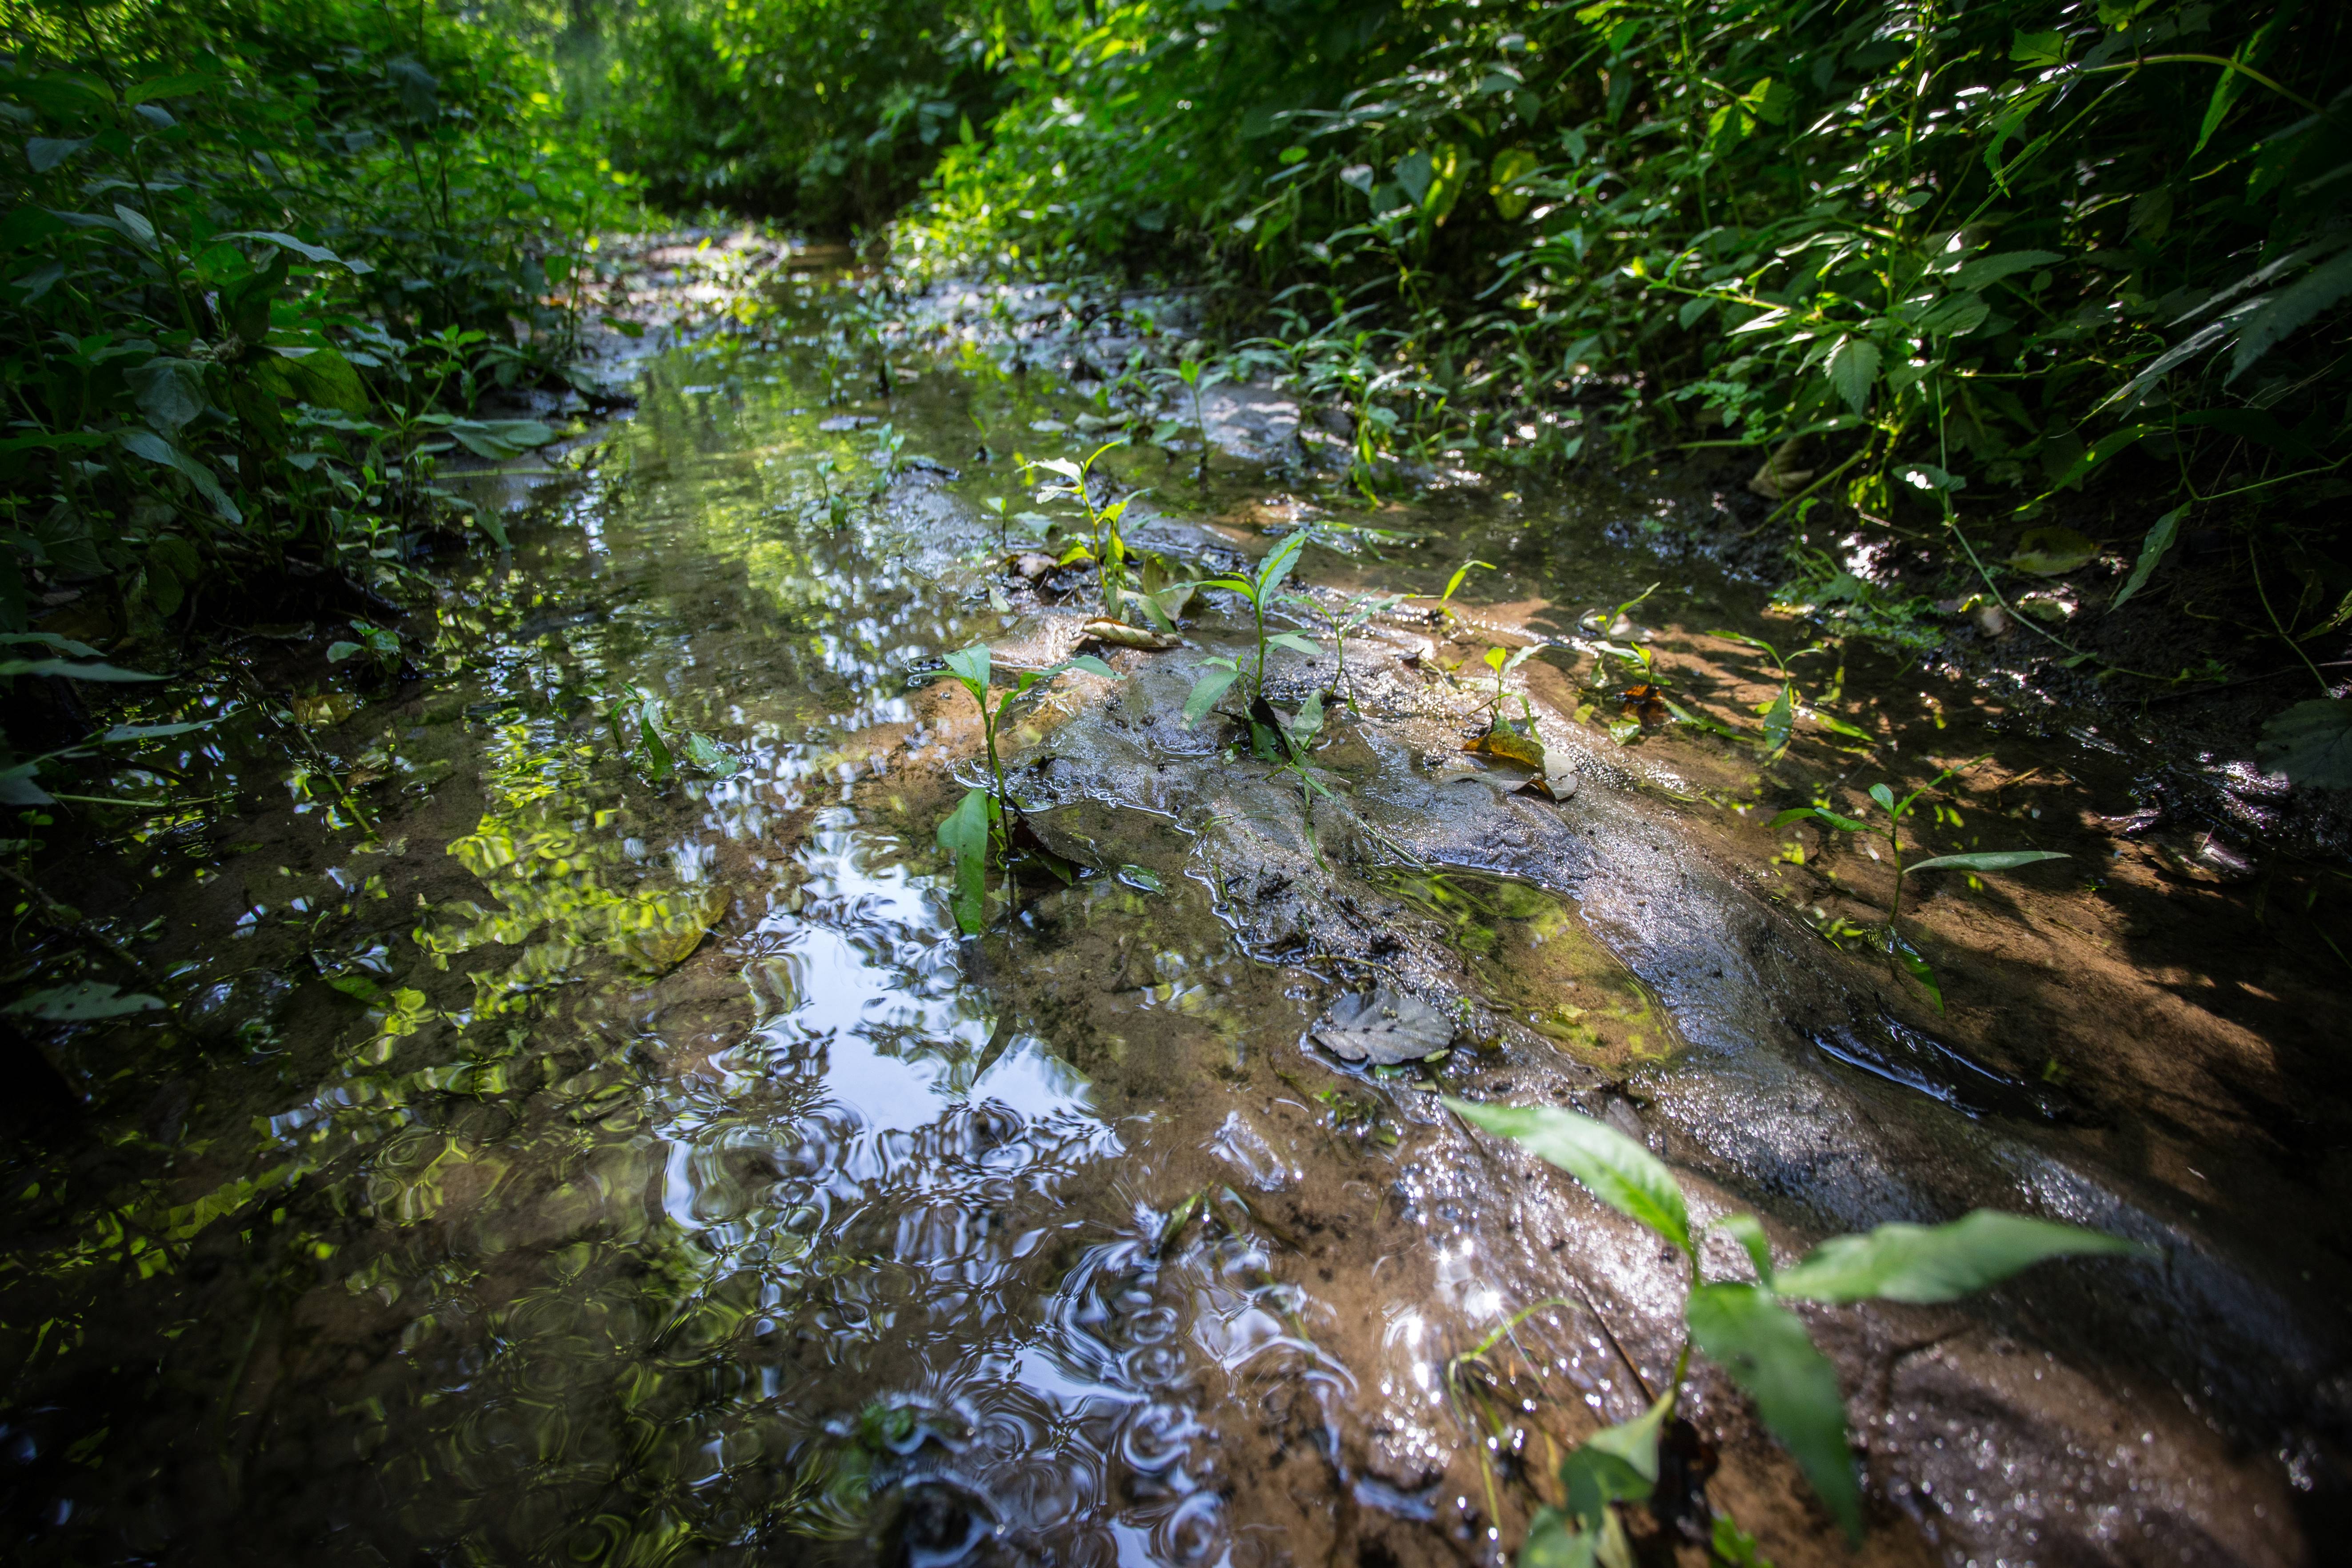 Zdjęcie przedstawia płytki strumyk płynący przez zieloną roślinność. Fot. Agata Ożarowska